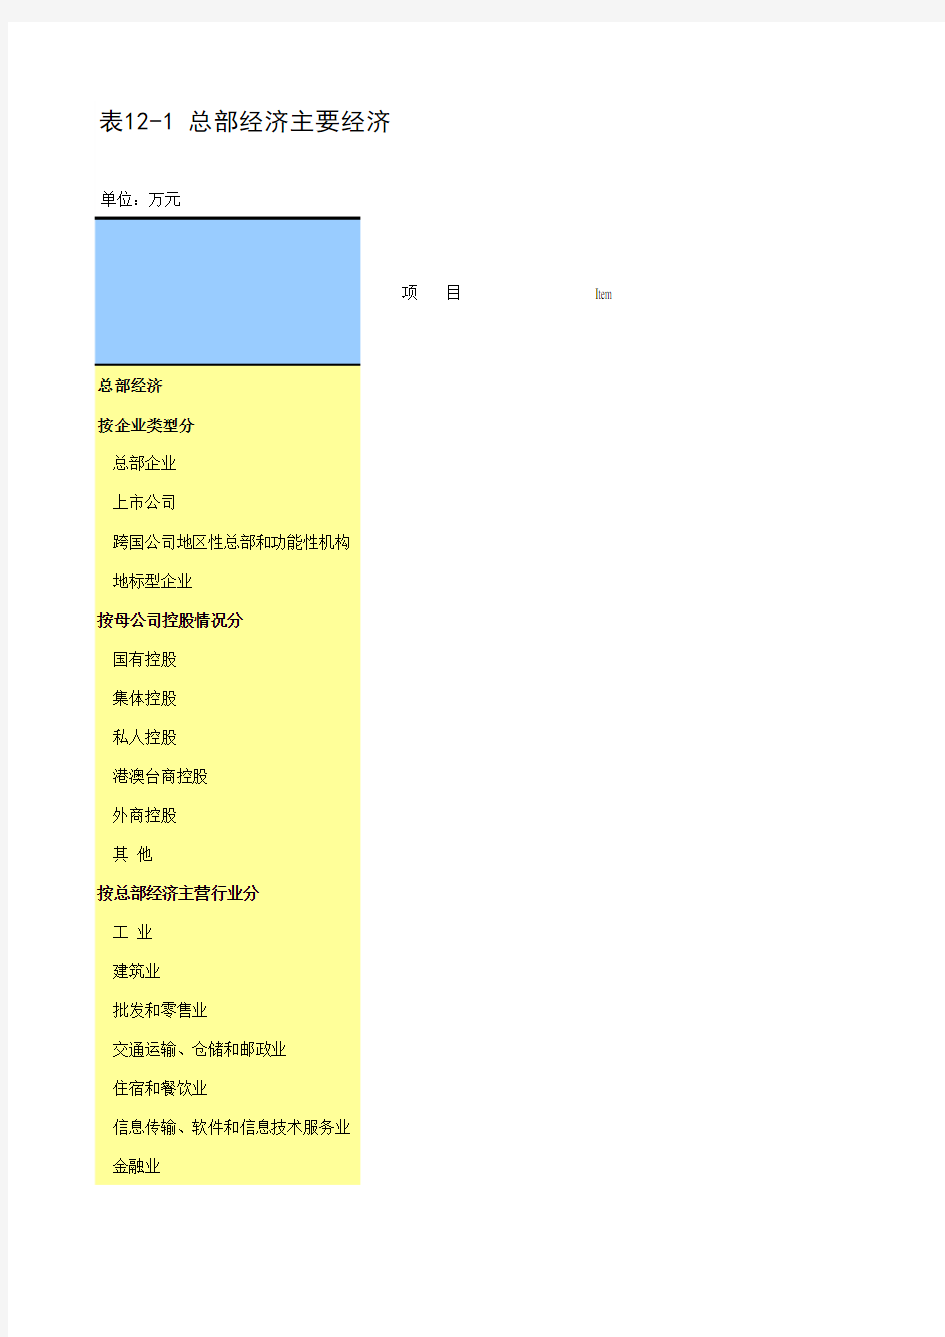 江苏省苏州市统计年鉴社会经济发展指标数据：12-1 总部经济主要经济指标(2018年)